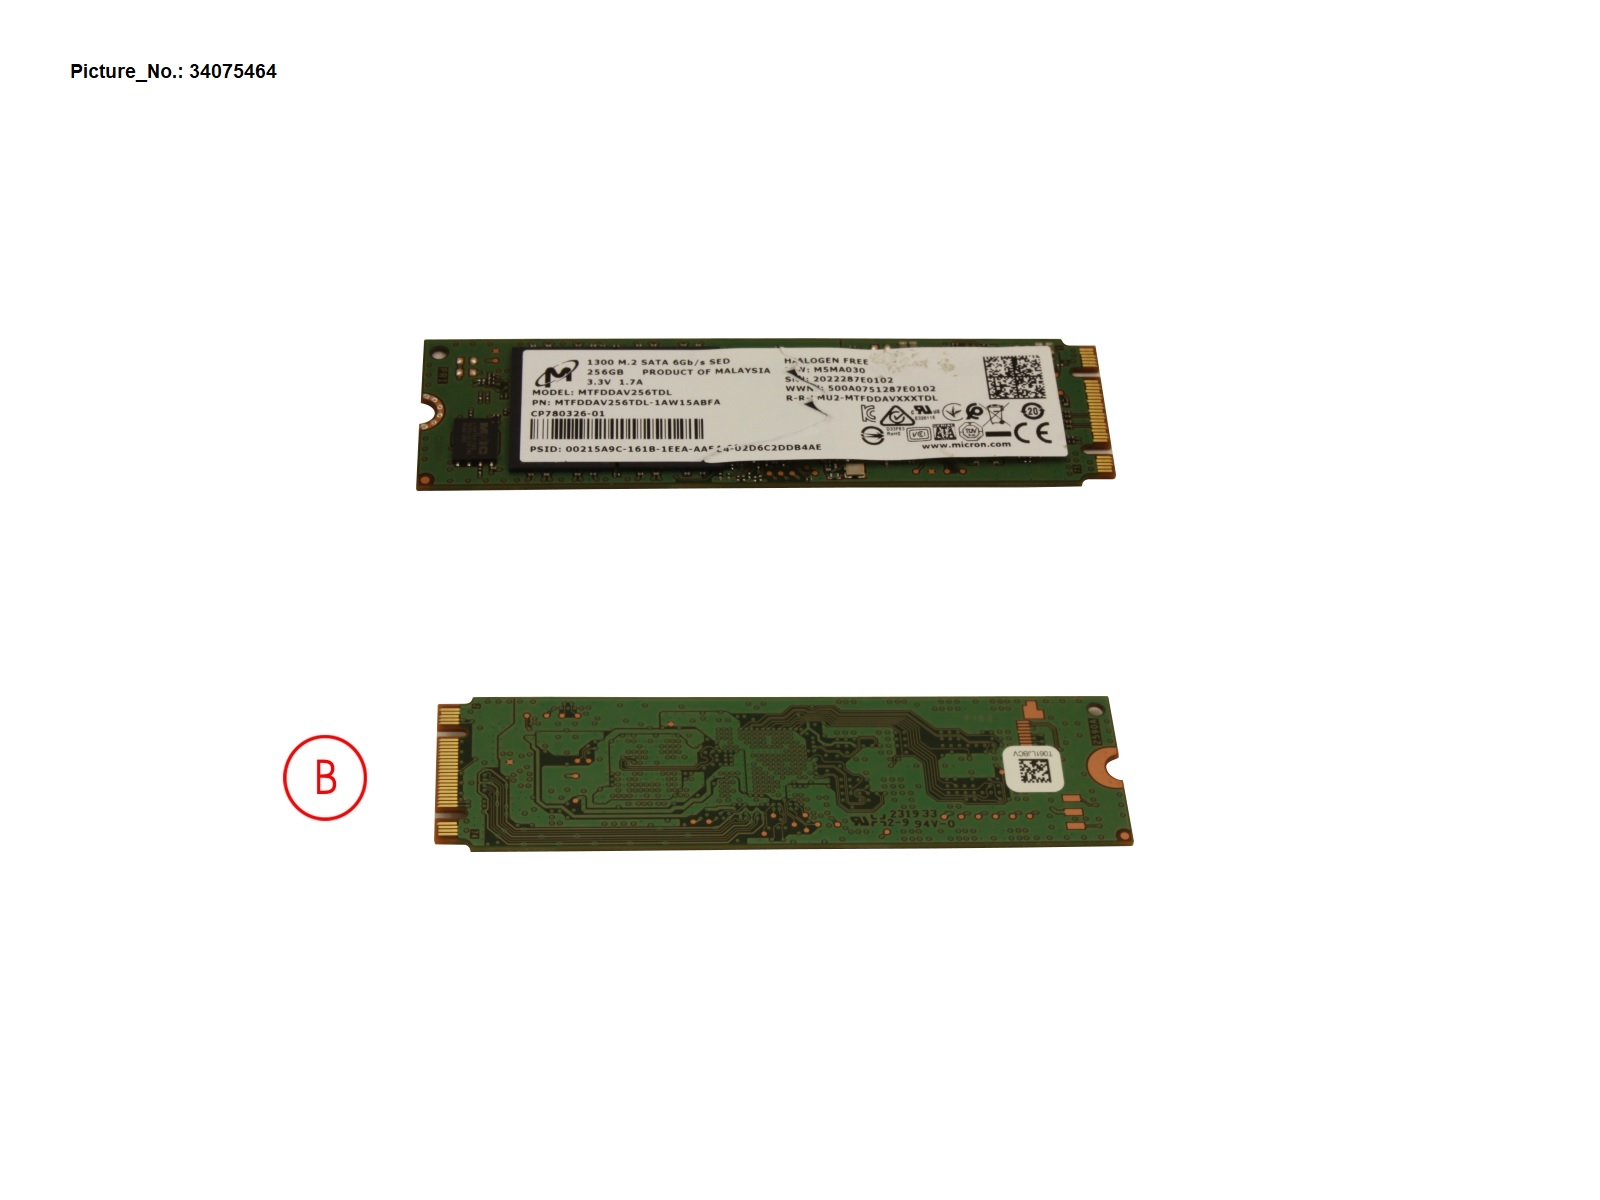 SSD S3 M.2 2280 MOI 1300 256GB(OPAL)